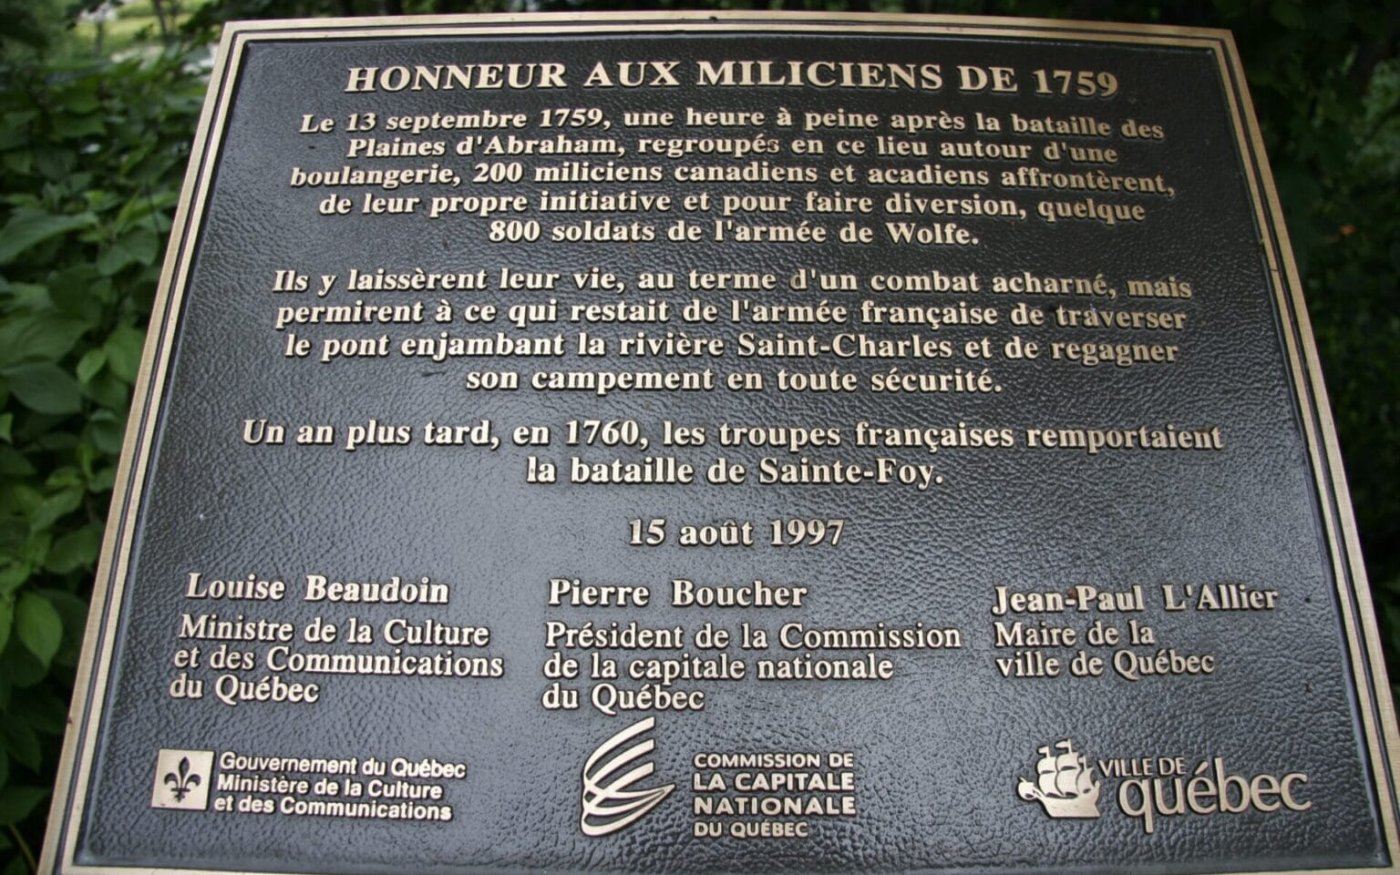 La plaque Honneur aux miliciens de 1759